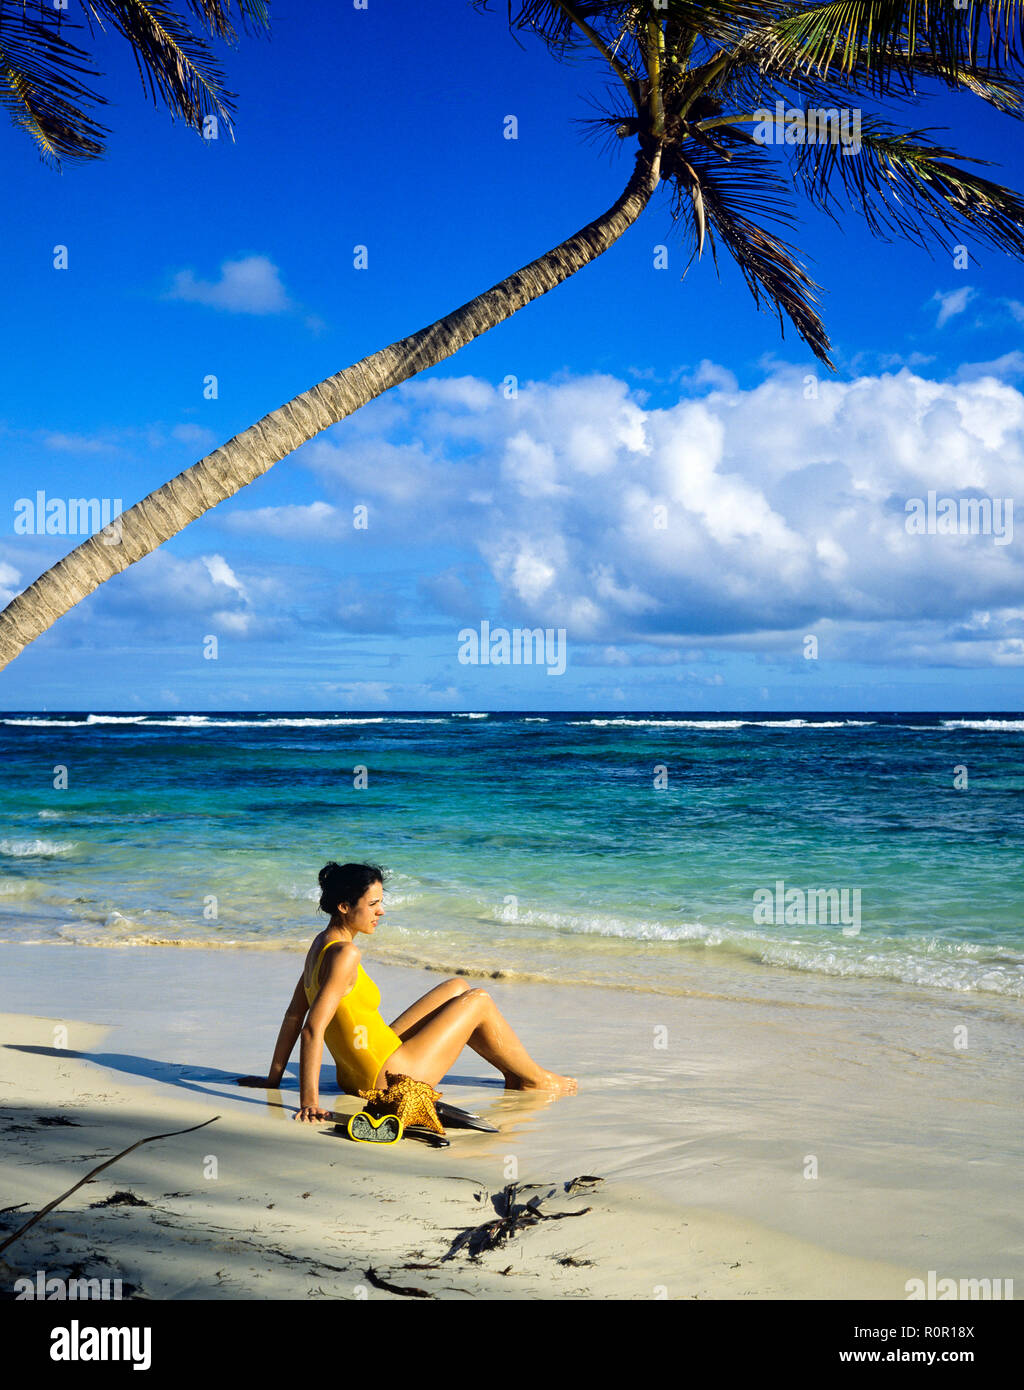 Giovane donna con il costume da bagno giallo seduto sulla spiaggia tropicale, Palm tree, il mare dei Caraibi, Guadalupa, French West Indies, Foto Stock